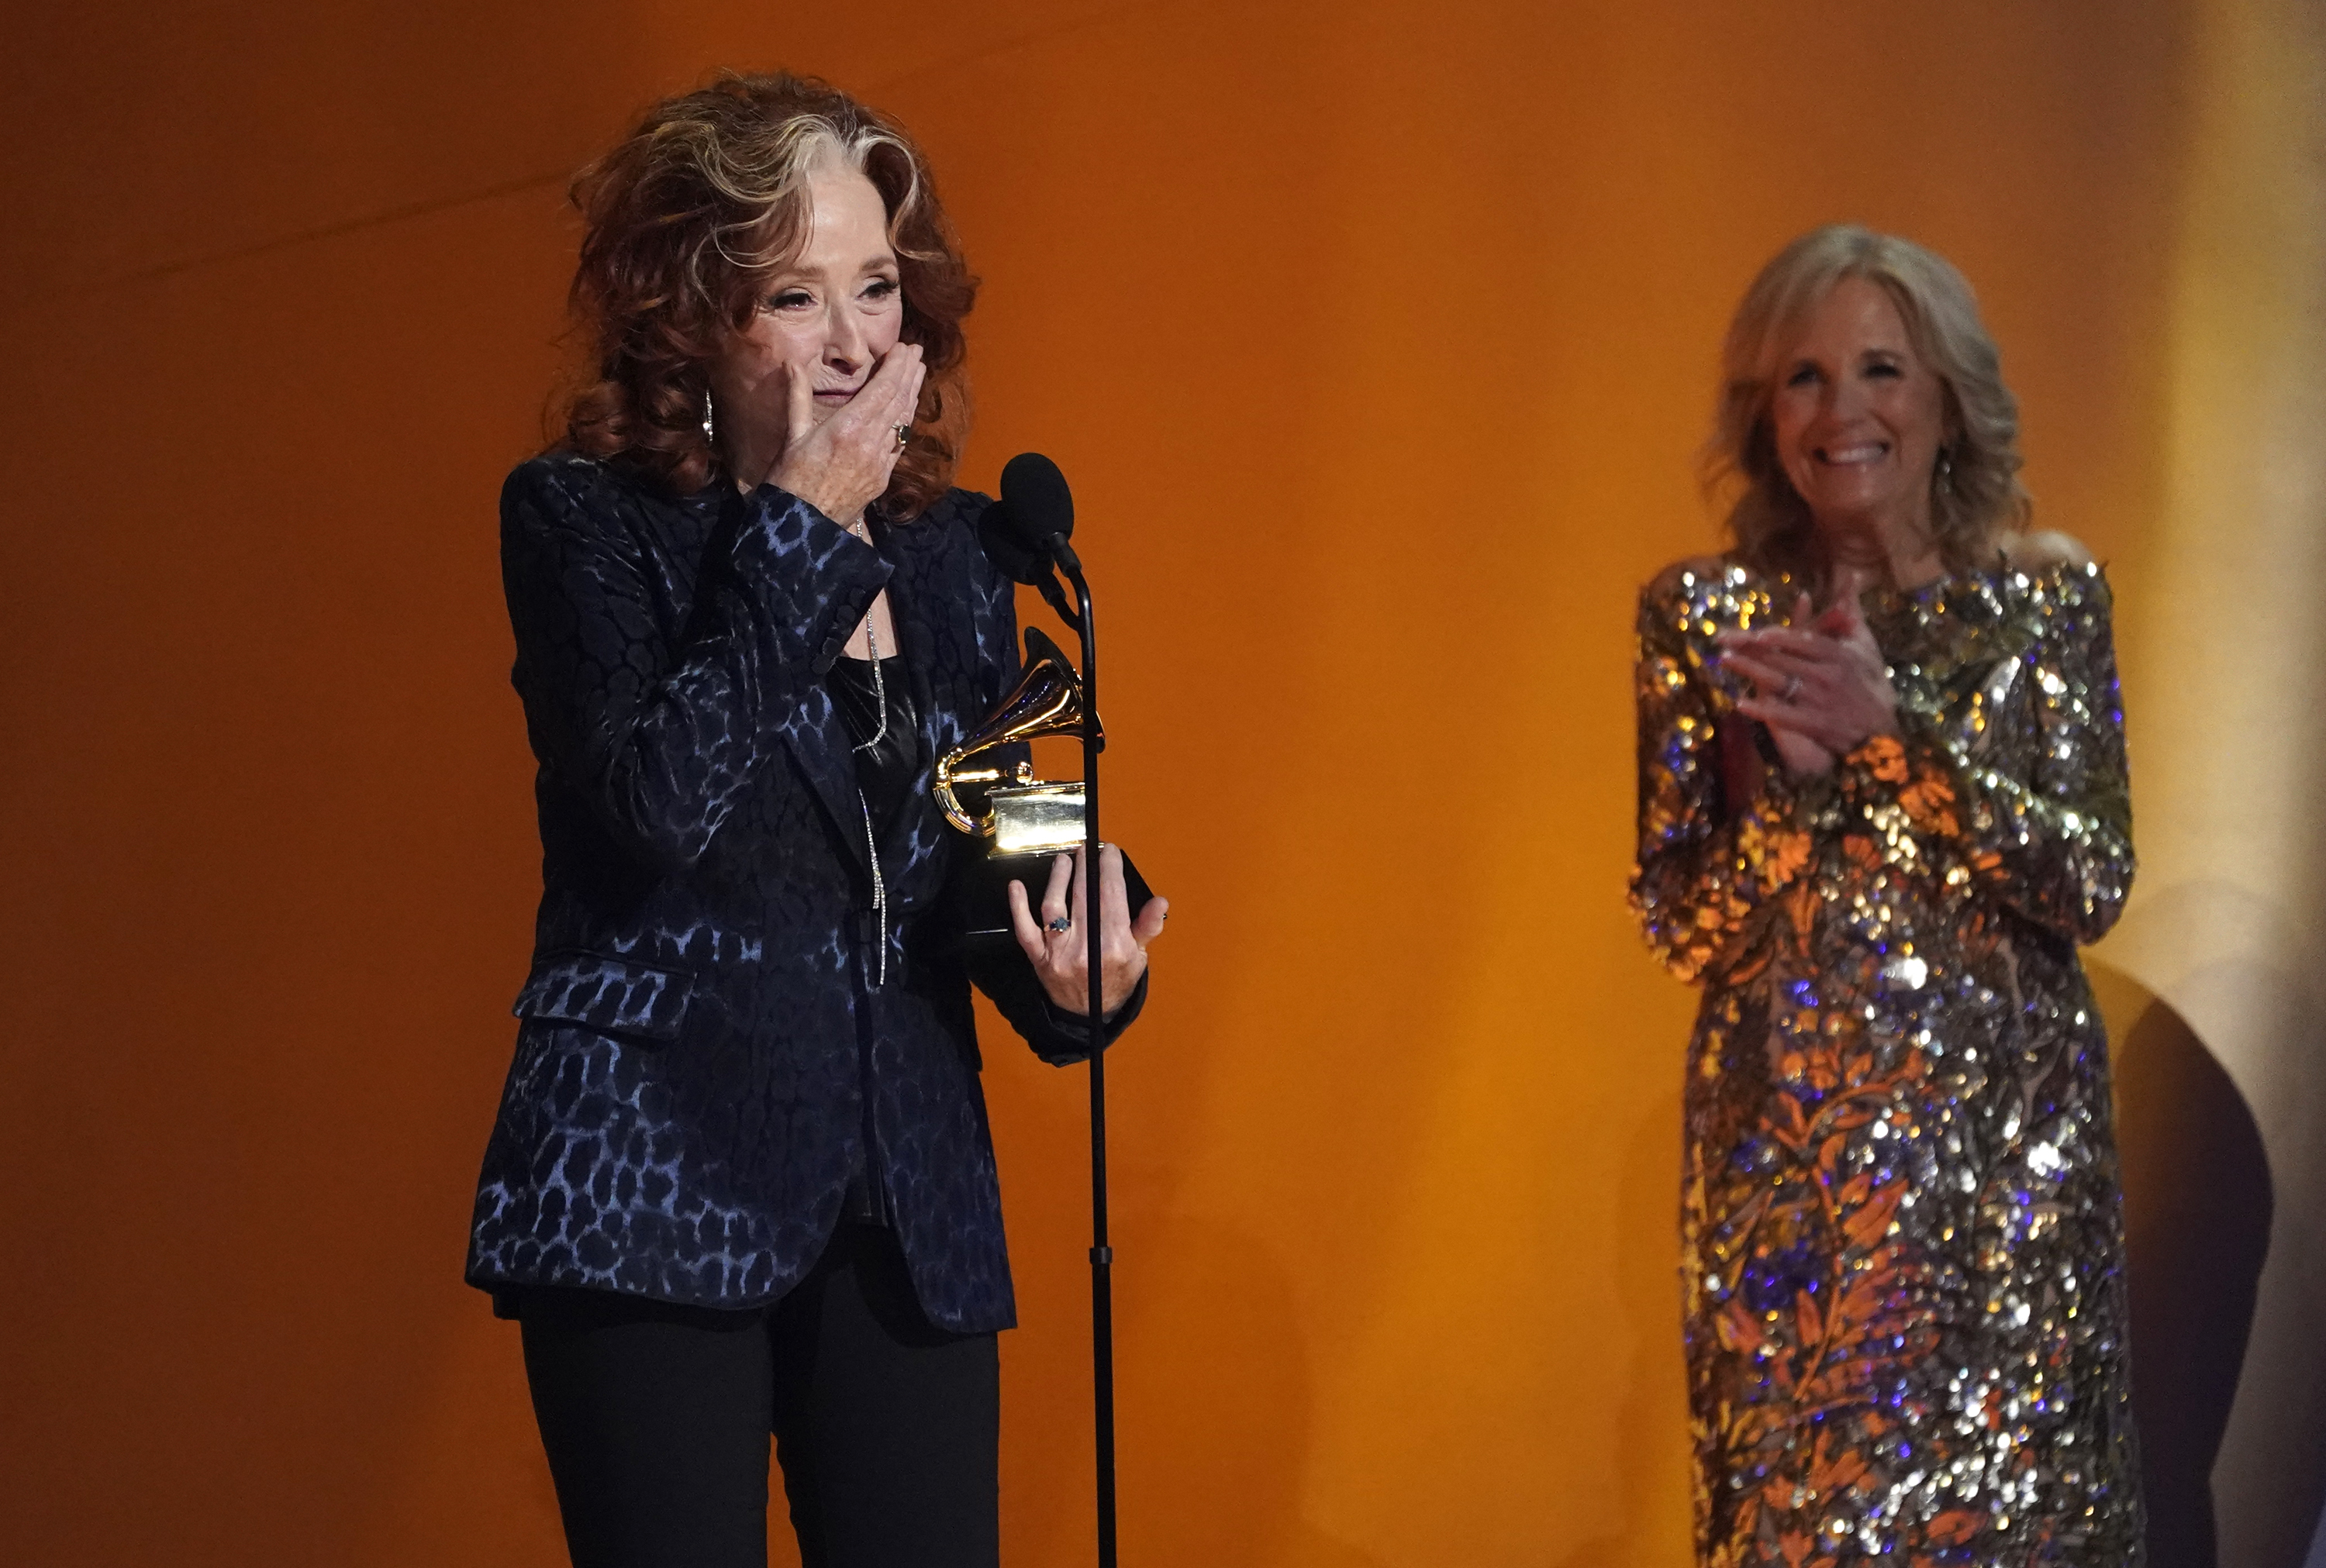 Bonnie Raitt recibe el premio a canción del año por "Just Like That" en la 65a entrega anual del Grammy el domingo 5 de febrero de 2023, en Los Angeles. La primera dama Jill Biden está a la derecha. (Foto AP/Chris Pizzello)